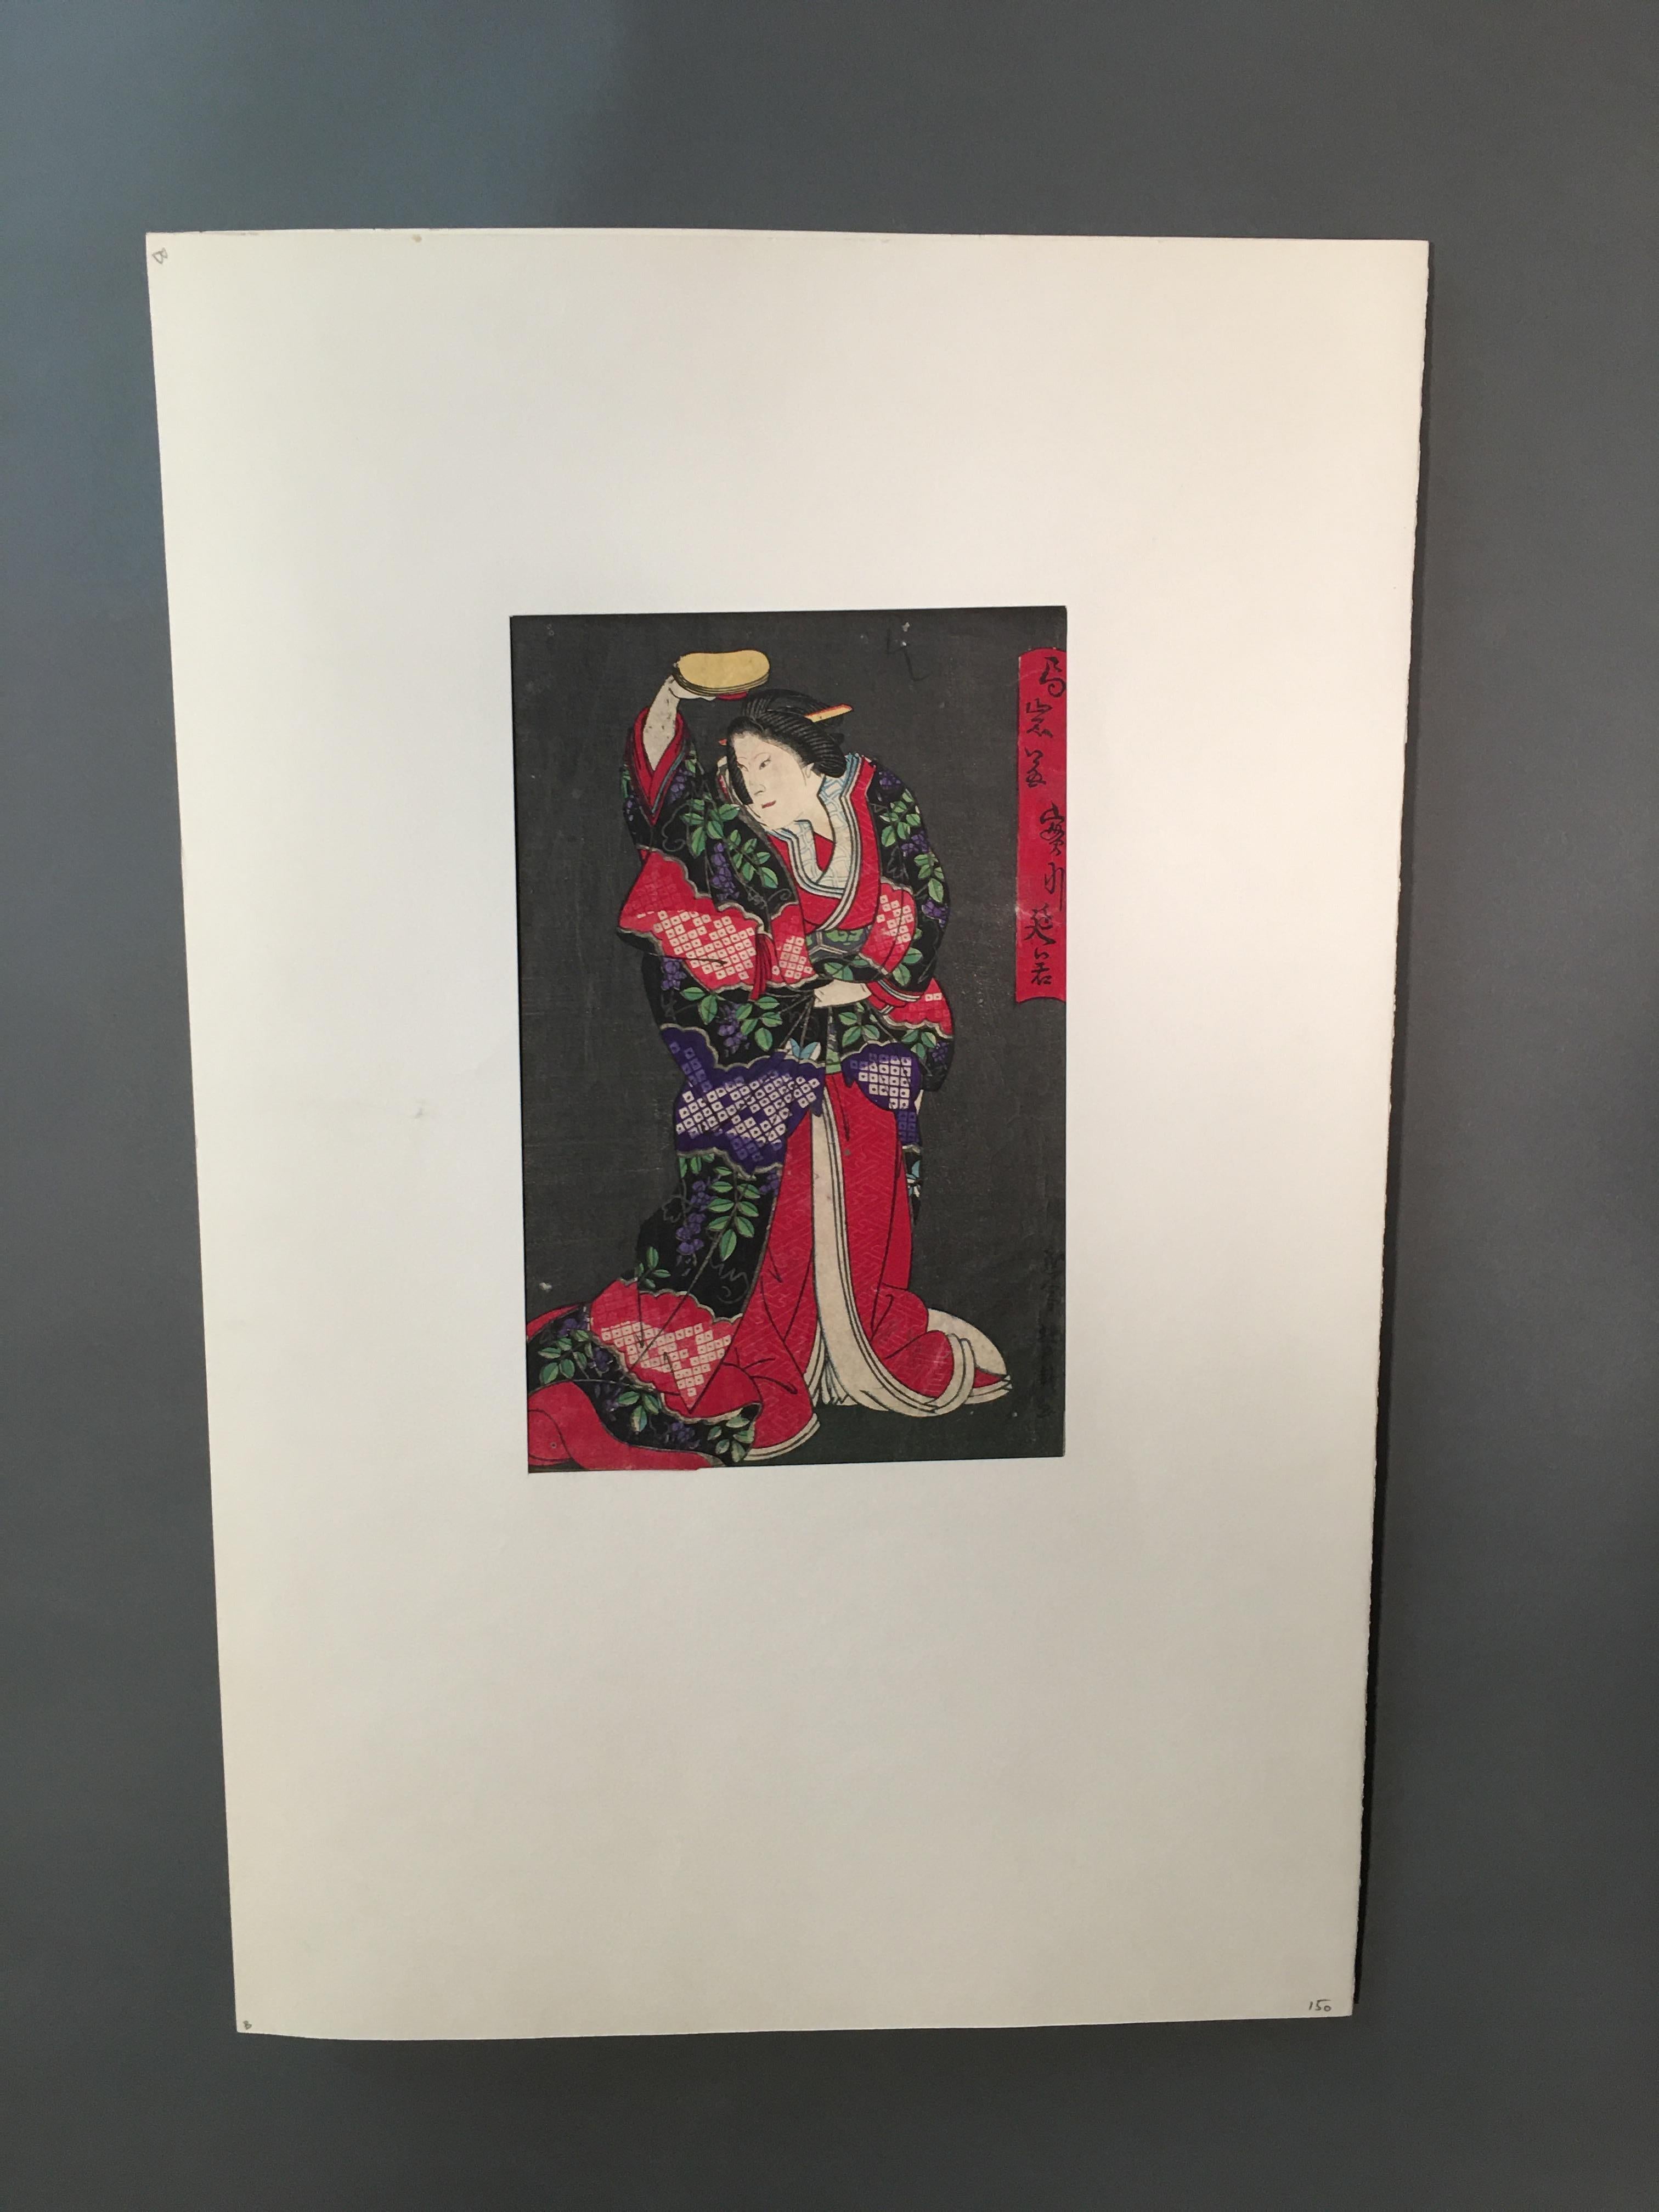 Faszinierende und wichtige orientalische Farbzeichnung
Japanisch Gheisha.
Jedes Stück unserer Galerie wird auf Wunsch von einem Echtheitszertifikat begleitet, das von Sabrina Egidi, der offiziellen Expertin für italienische Möbel bei der